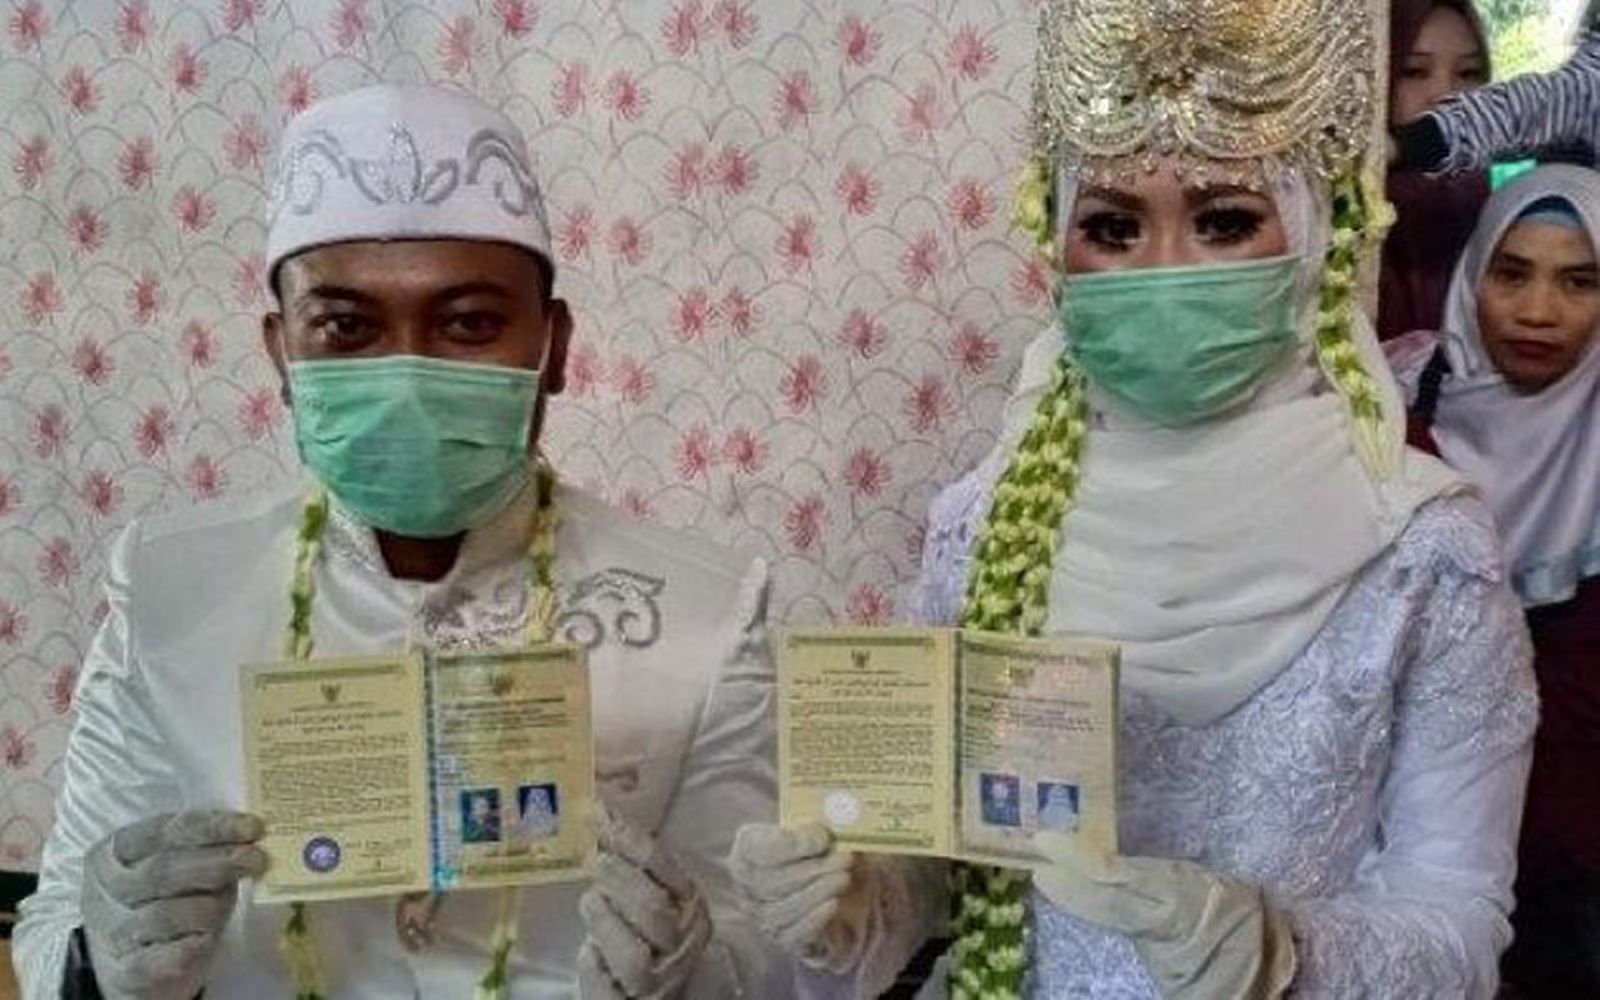 Một lễ thành hôn đơn giản tại Văn phòng tôn giáo ở miền Nam Kalimantan, cô dâu và chú rể phải đeo khẩu trang (Ảnh: Kalimantannews).